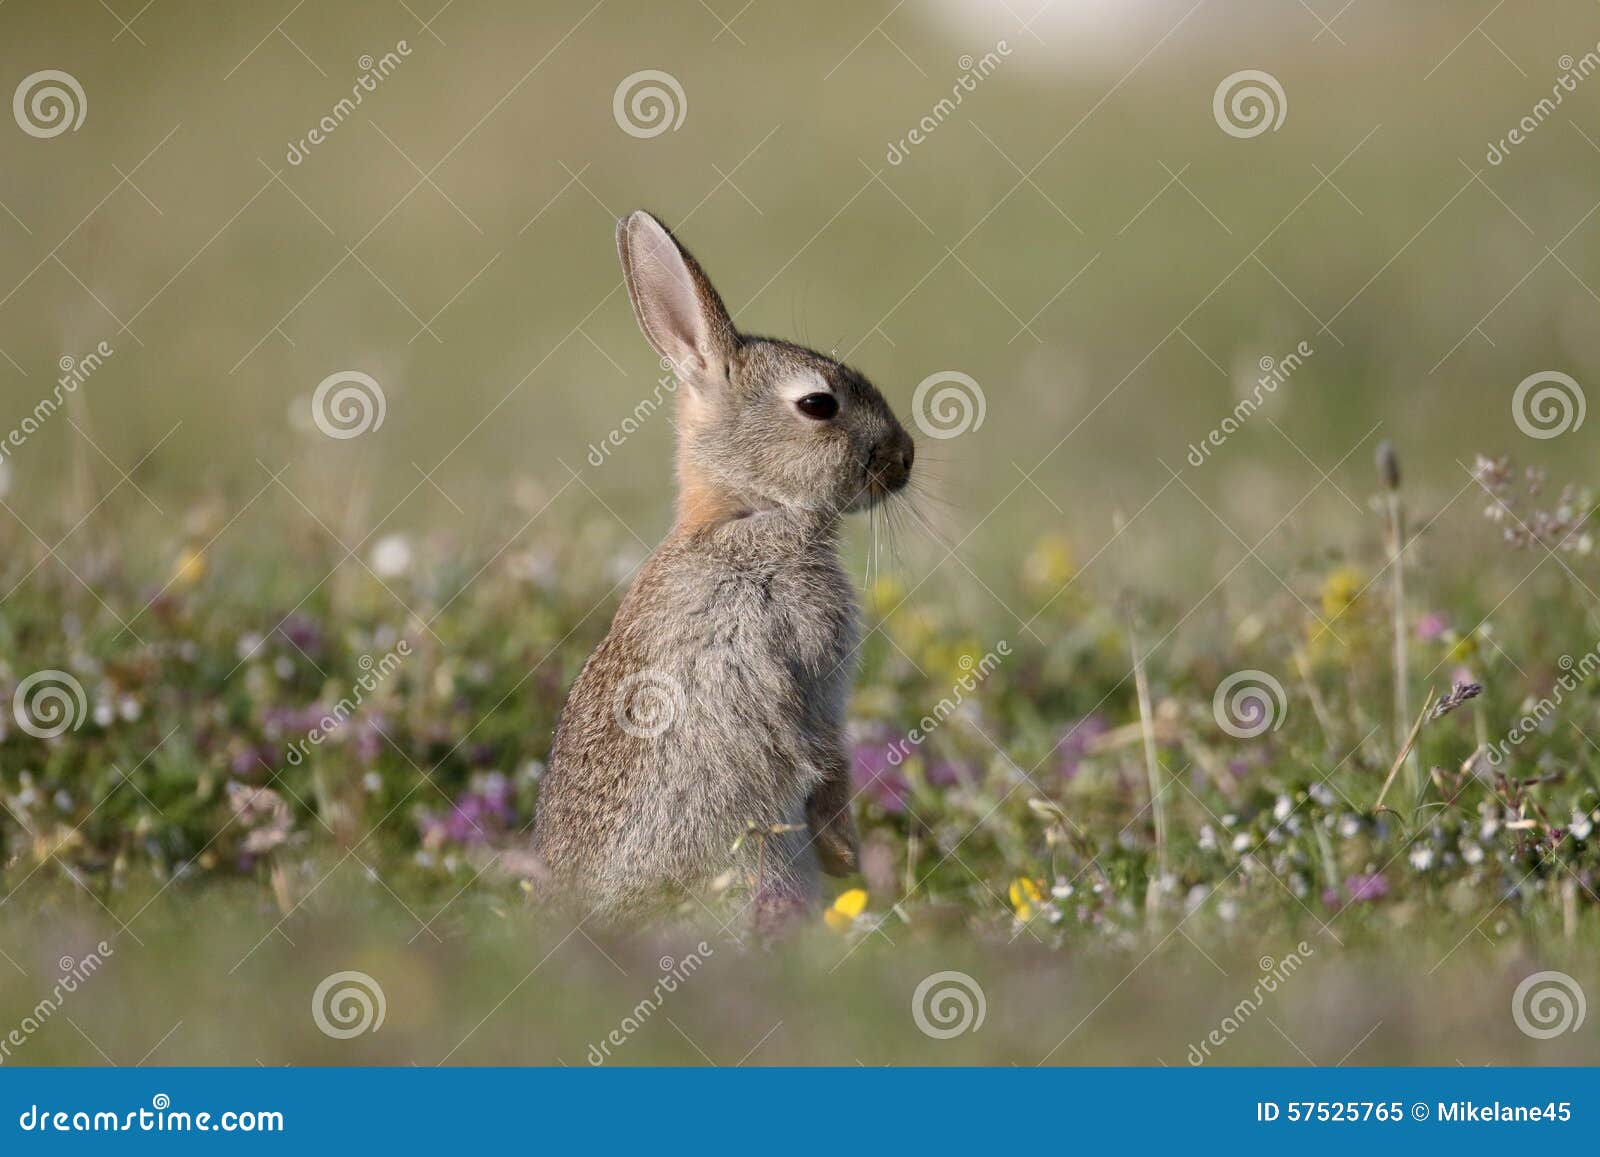 欧洲的兔子穴兔串孔在英国 库存照片. 图片 包括有 毛皮, 兔宝宝, 本质, 户外, 象草, 毛茸, 室外 - 142824528